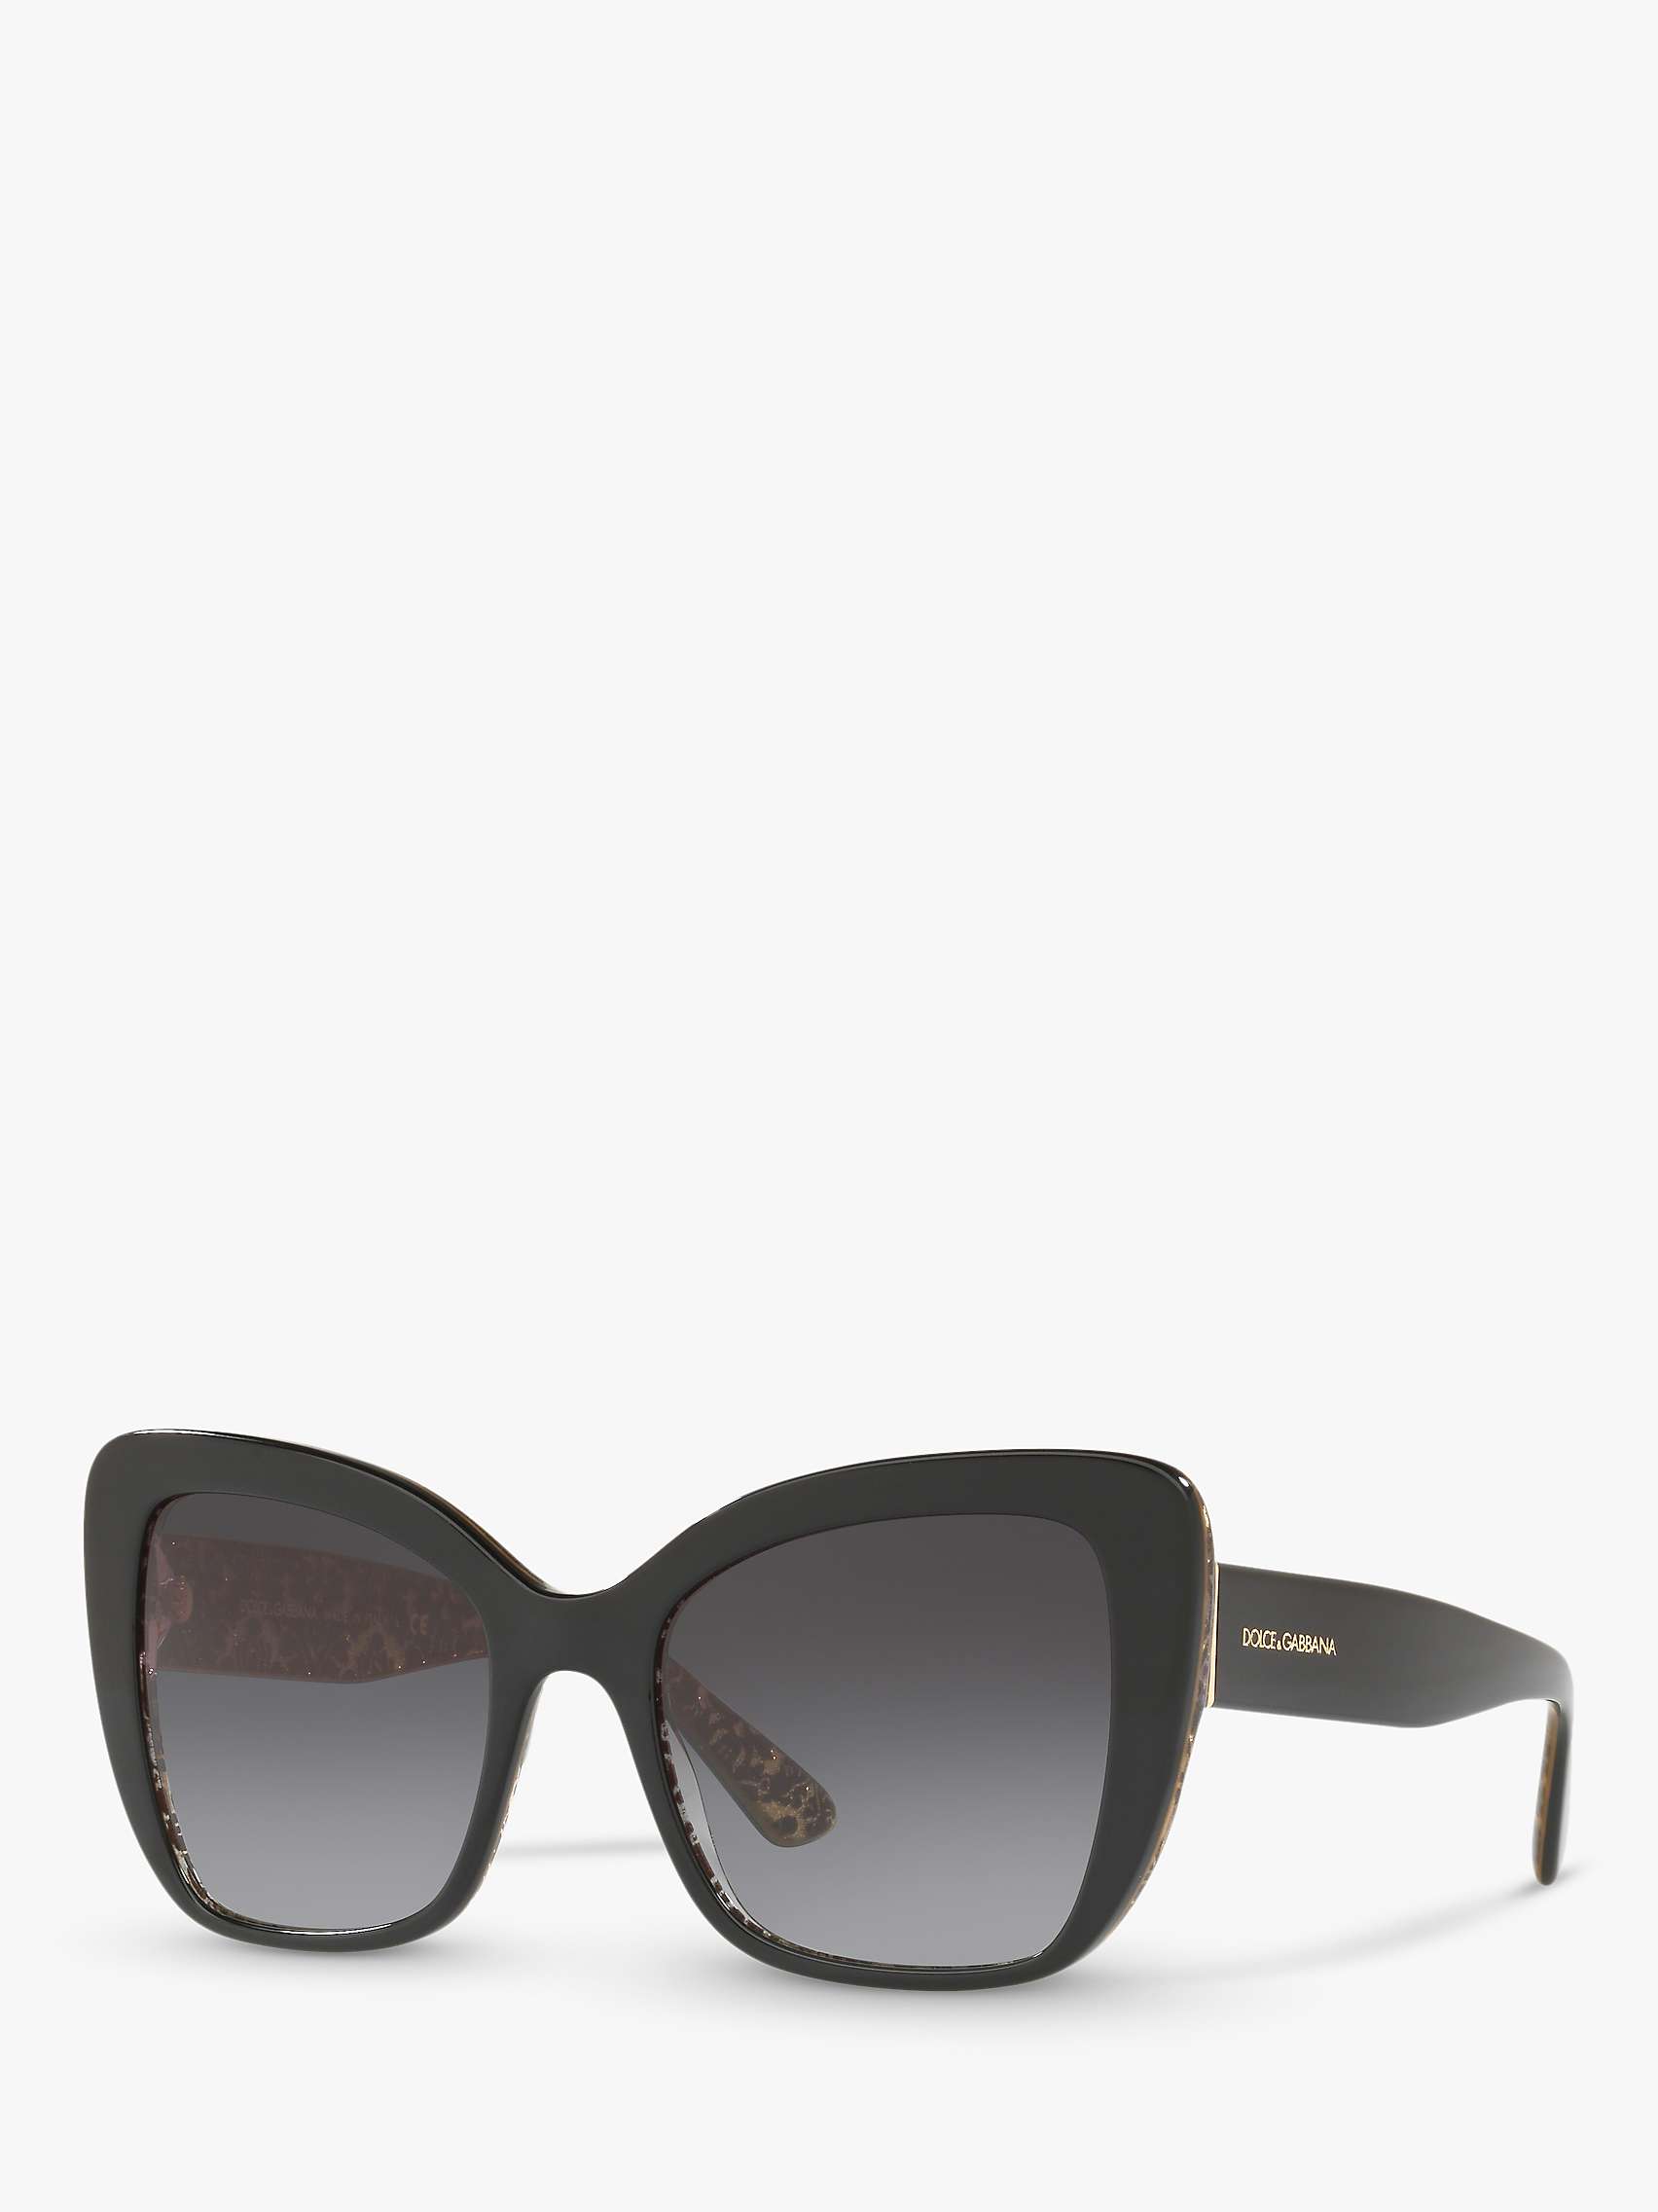 Buy Dolce & Gabbana DG4348 Women's Cat's Eye Sunglasses, Damascus Glitter/Black Online at johnlewis.com